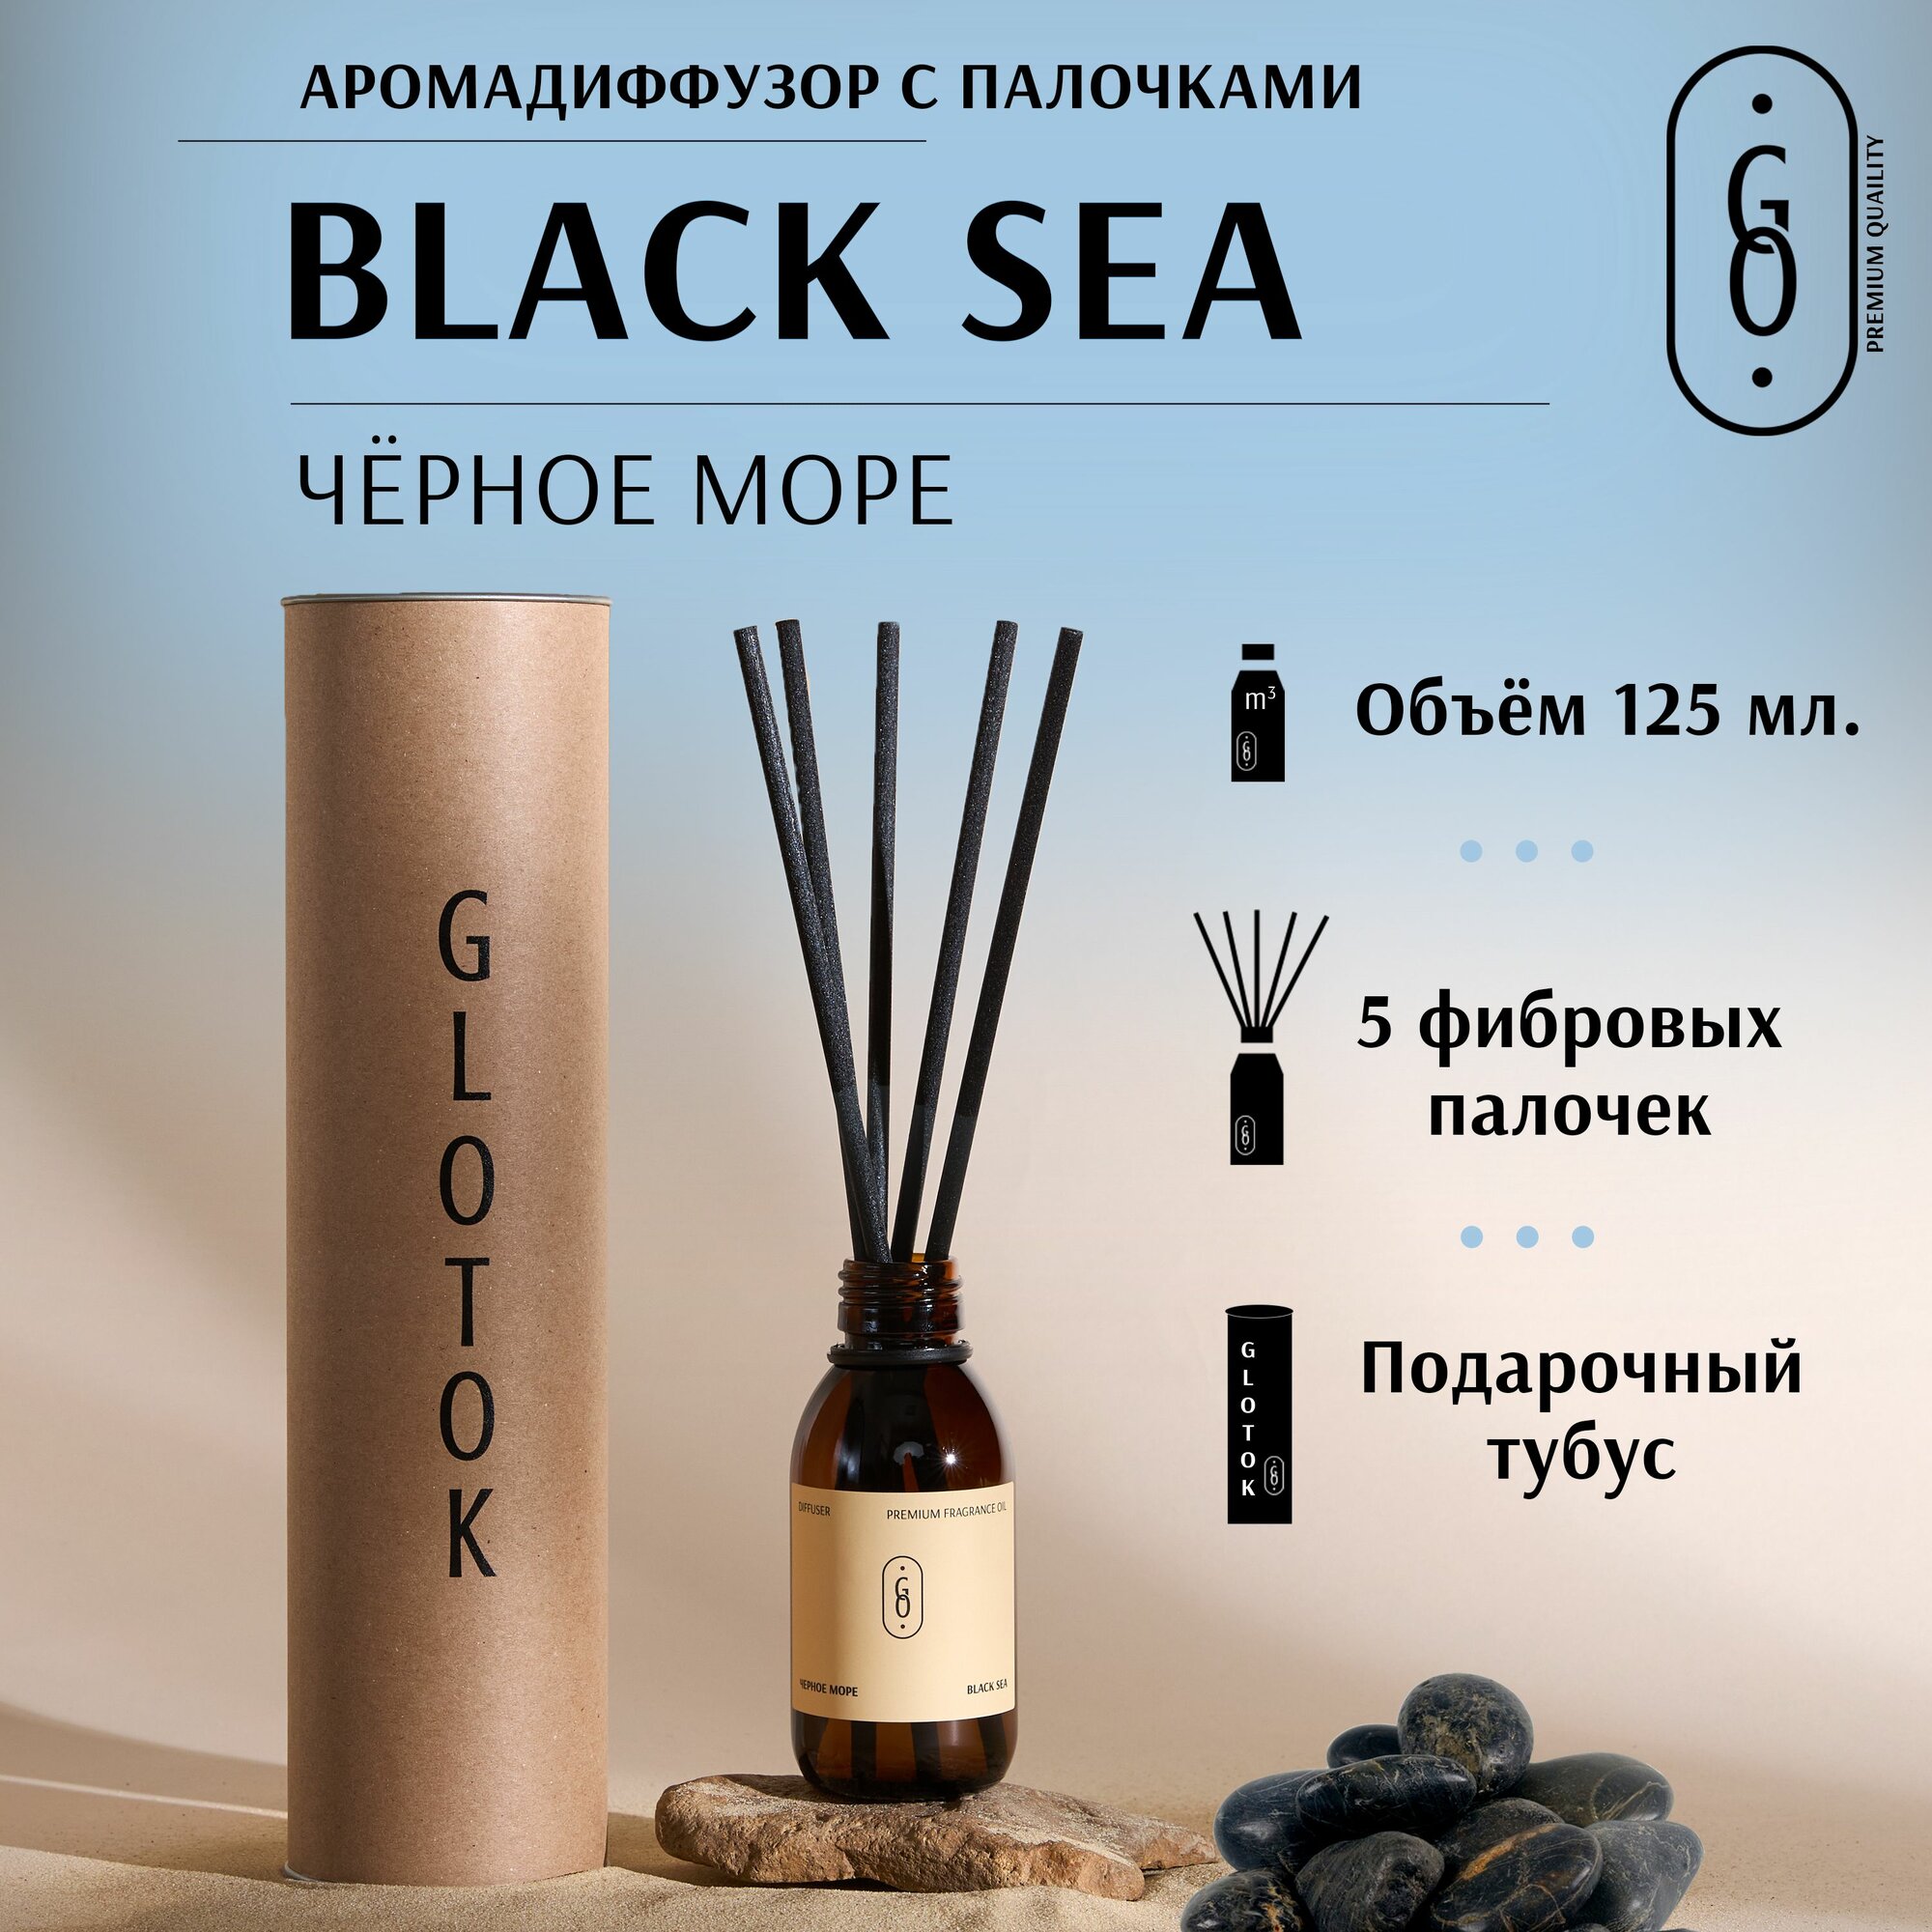 Ароматический диффузор черное море / BLACK SEA, аромадиффузор с палочками, парфюм для дома и офиса